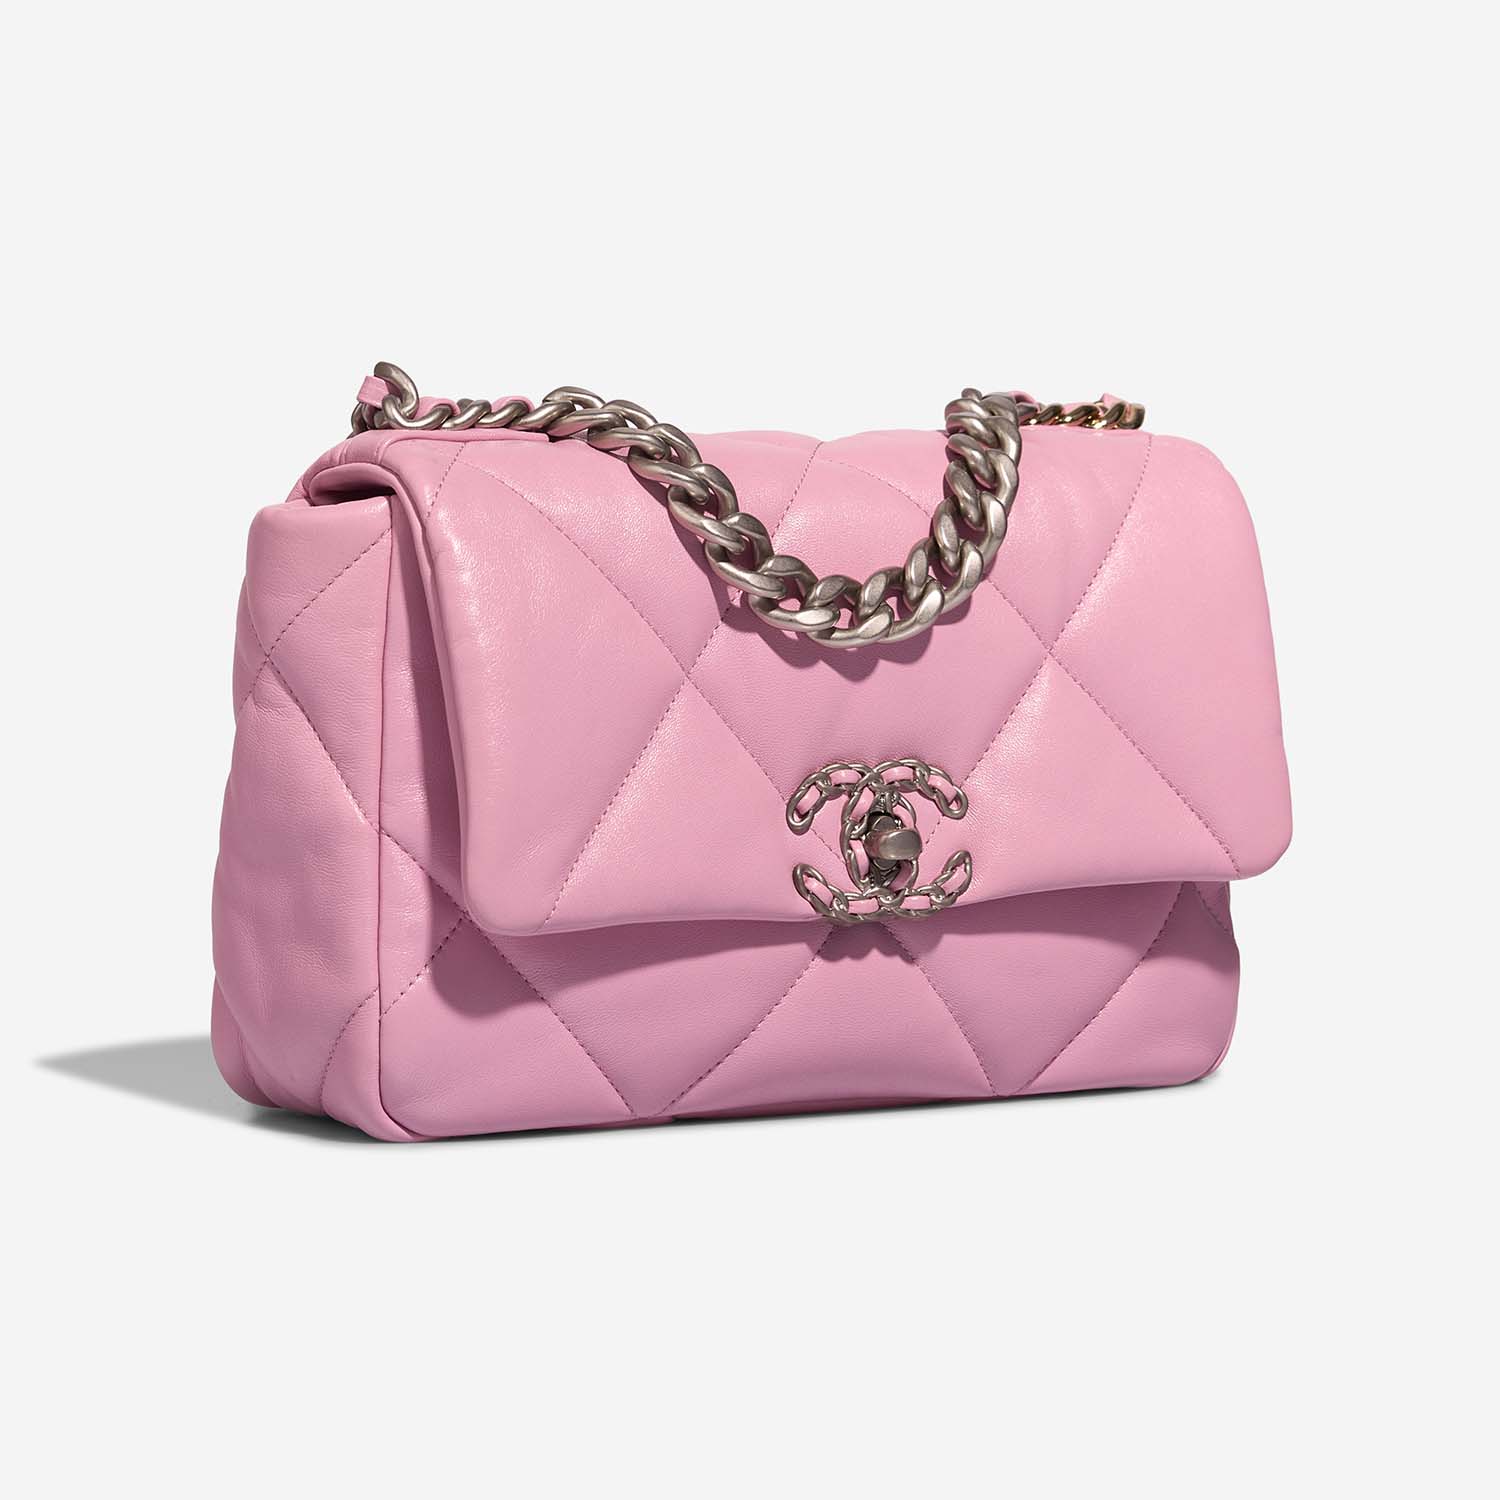 Chanel 19 Flapbag Pink Side Front | Sell your designer bag on Saclab.com